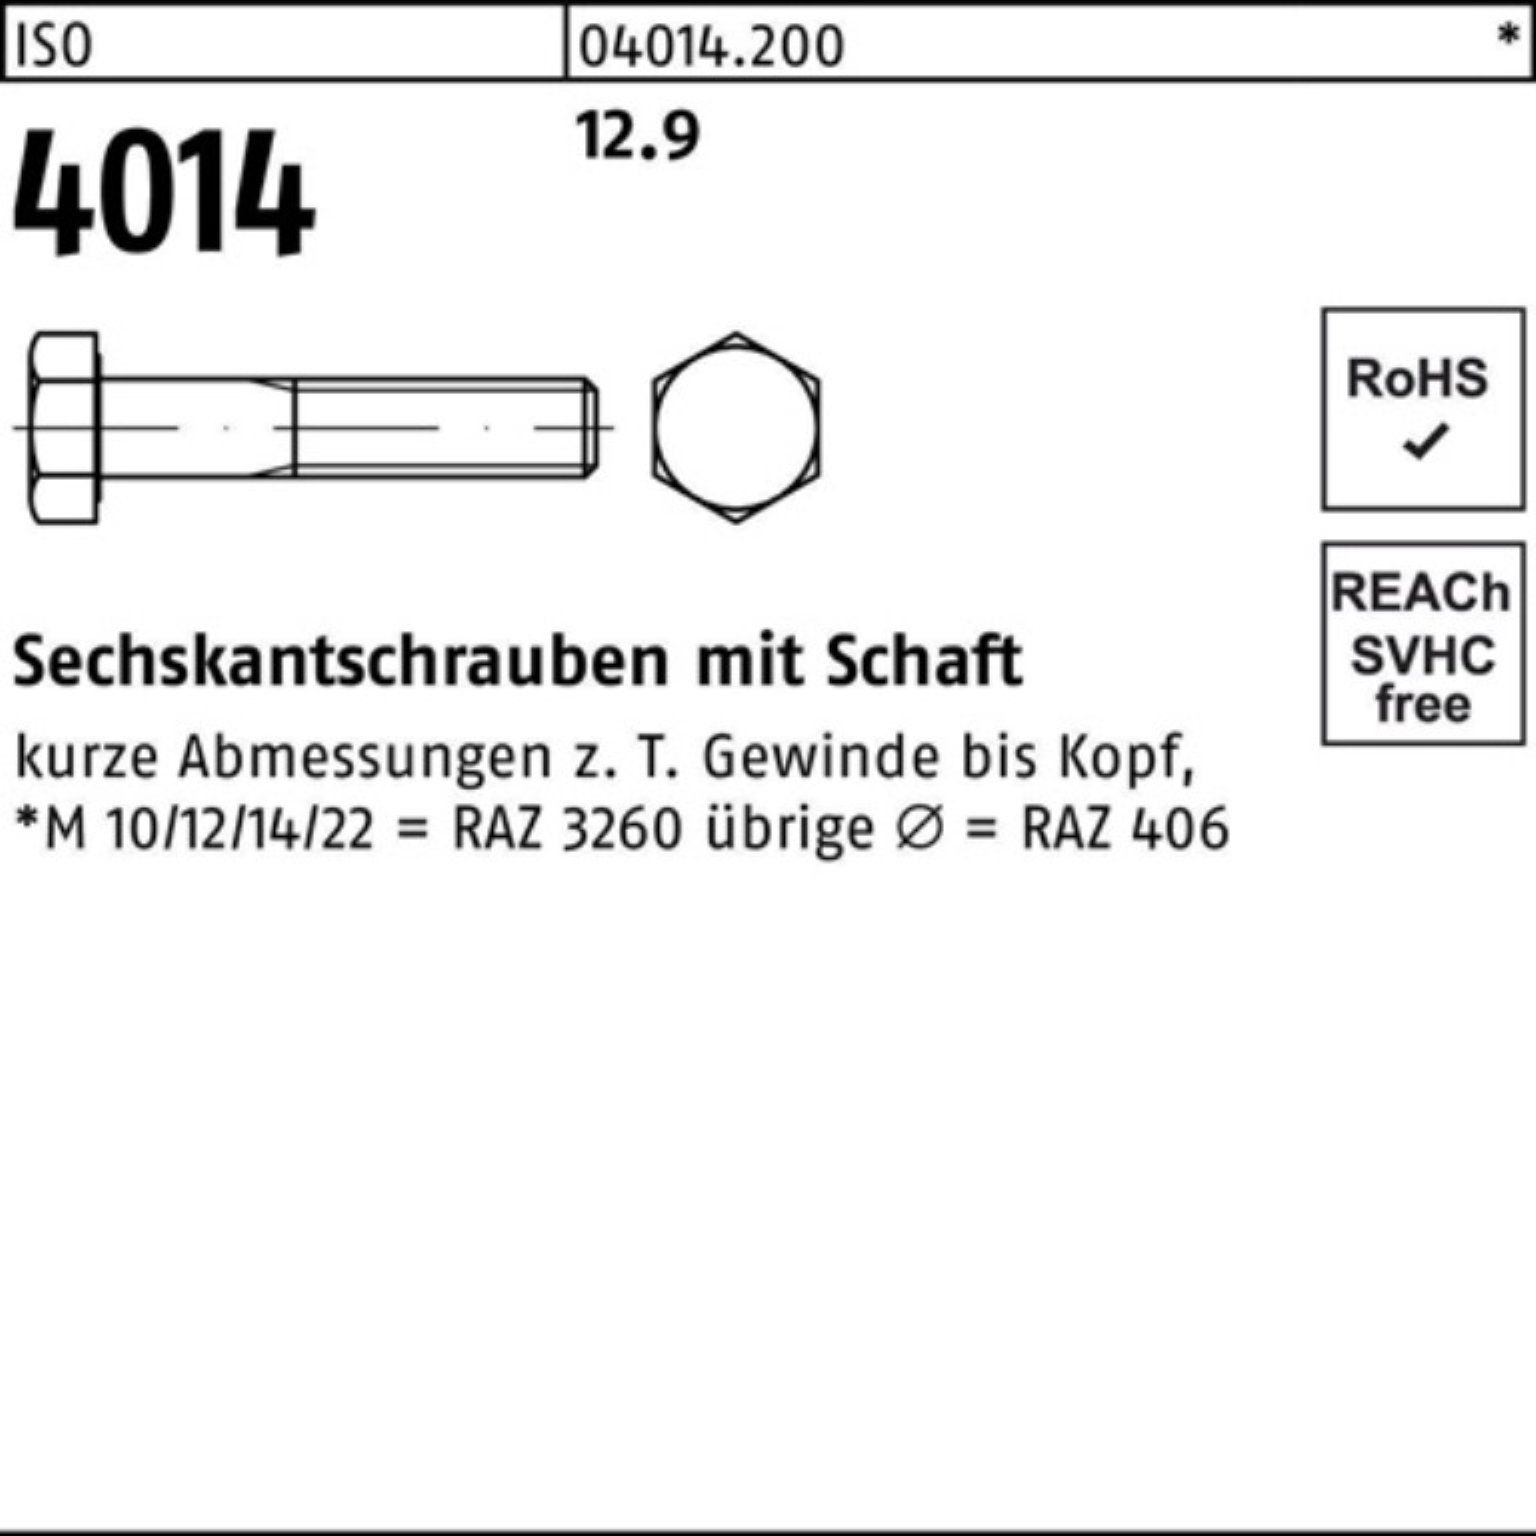 Stück Pack ISO 4014 Schaft Sechskantschraube 25 100er 100 Sechskantschraube 12.9 I Bufab M20x